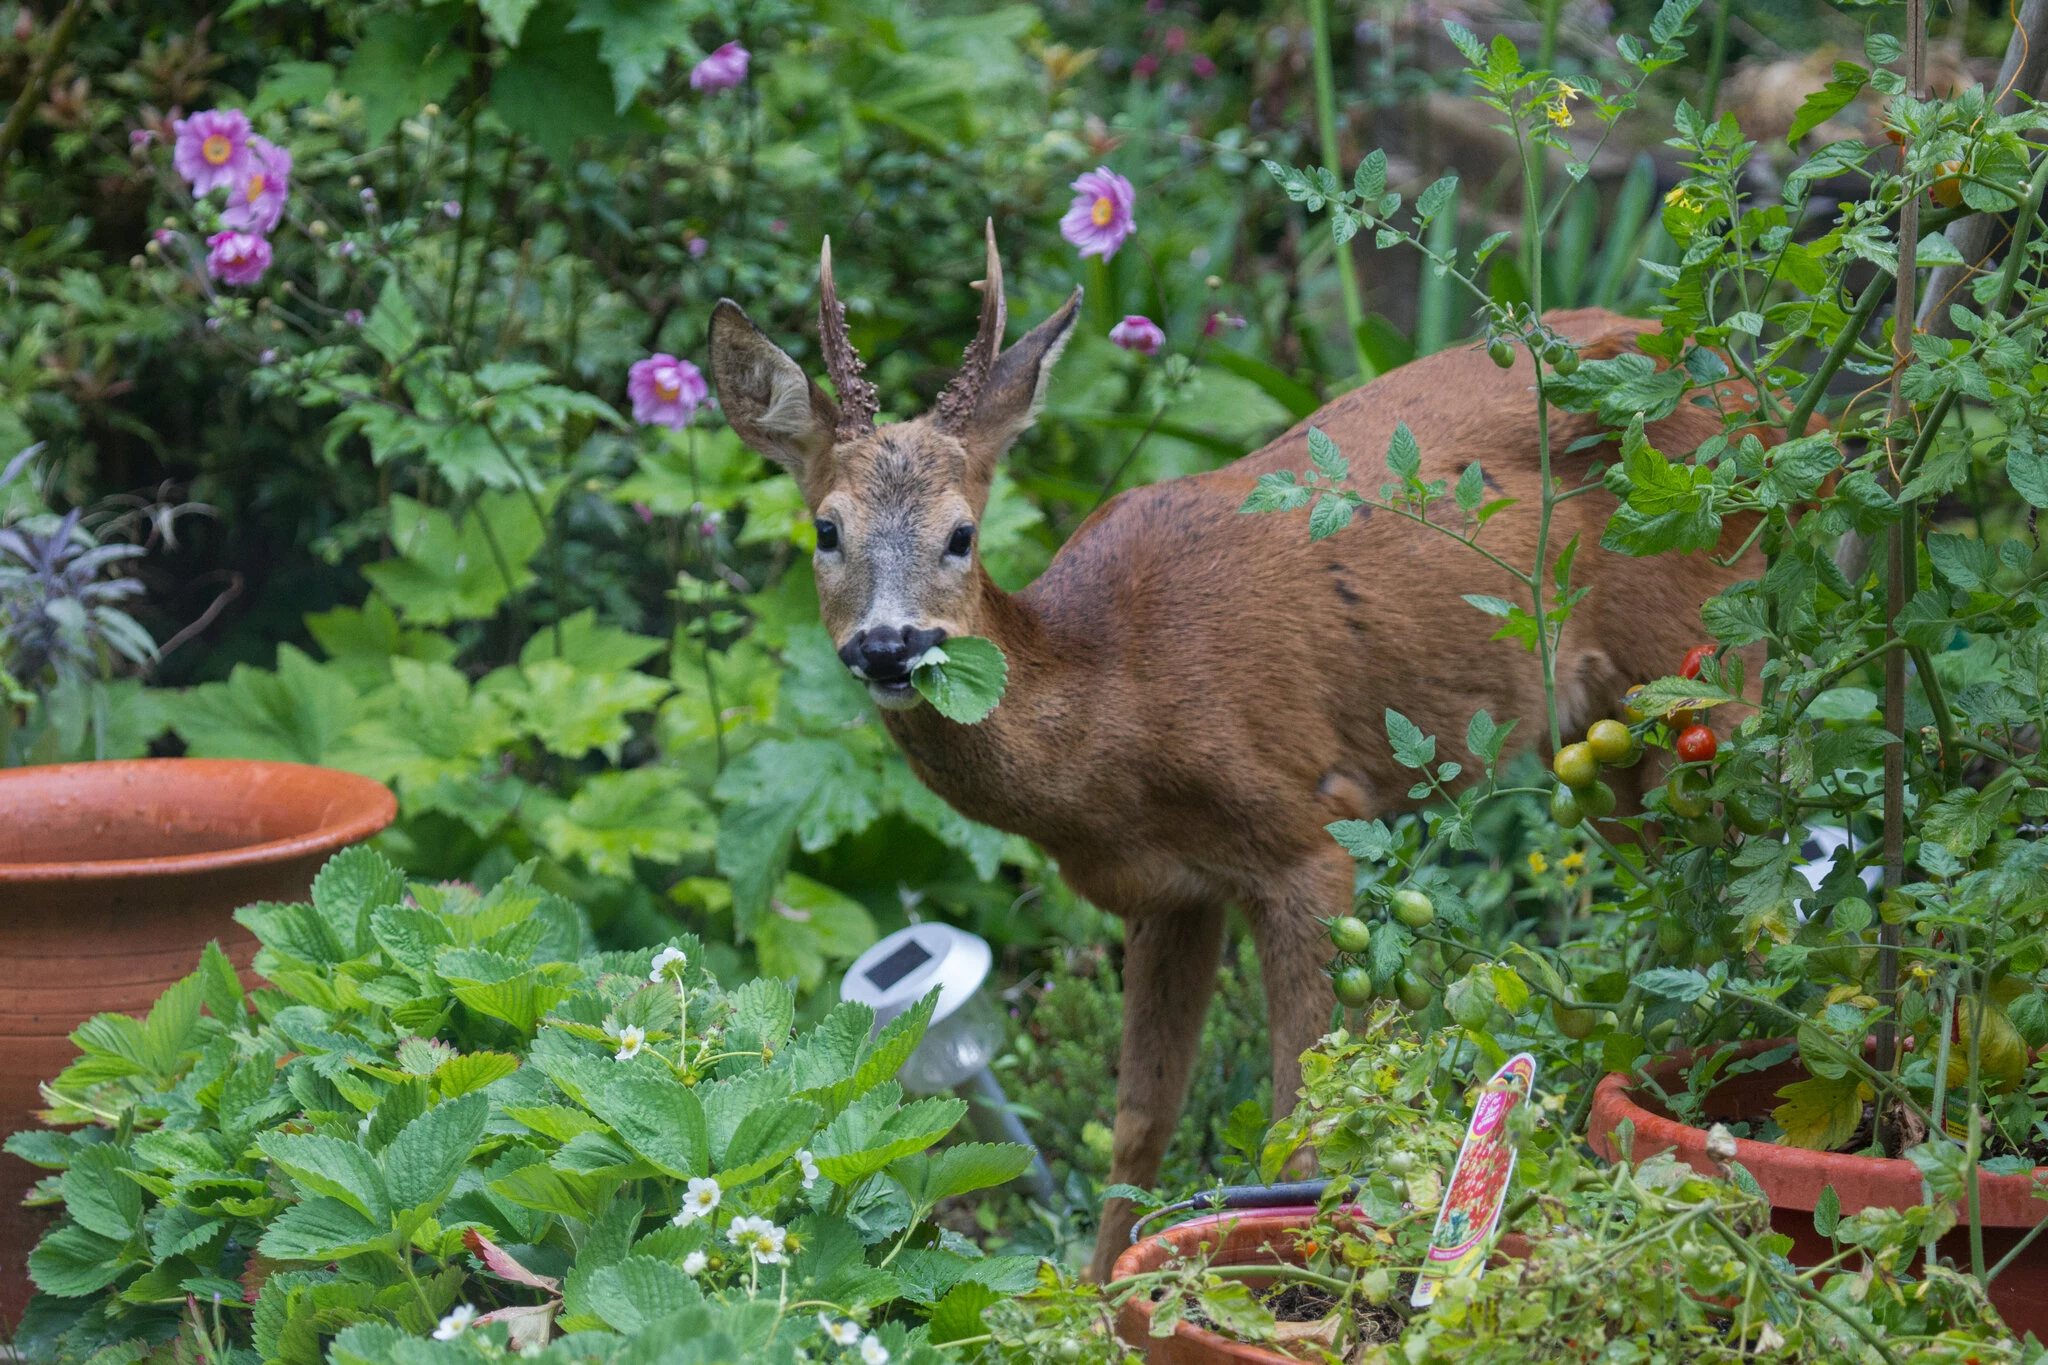 deer eating plants in garden